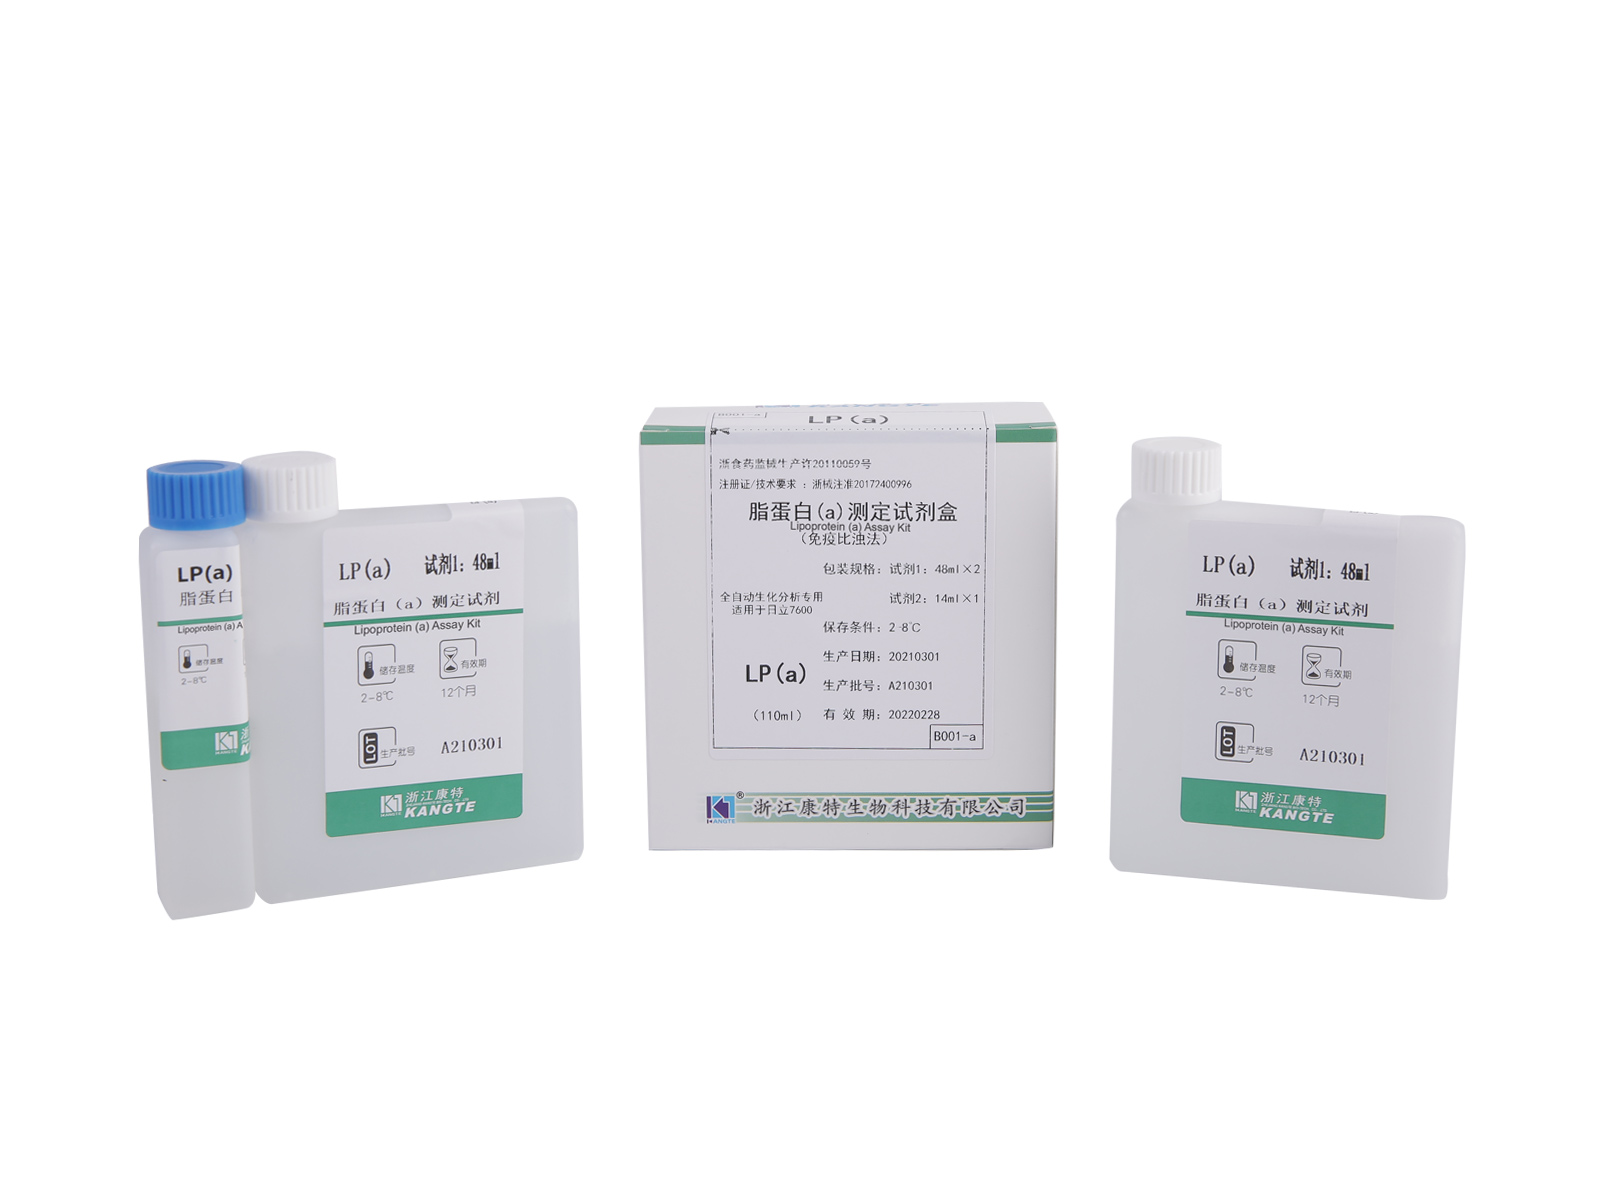 【LP(a)】 Lipoprotein (a) Assay Kit (latexförstärkt immunoturbidimetrisk metod)